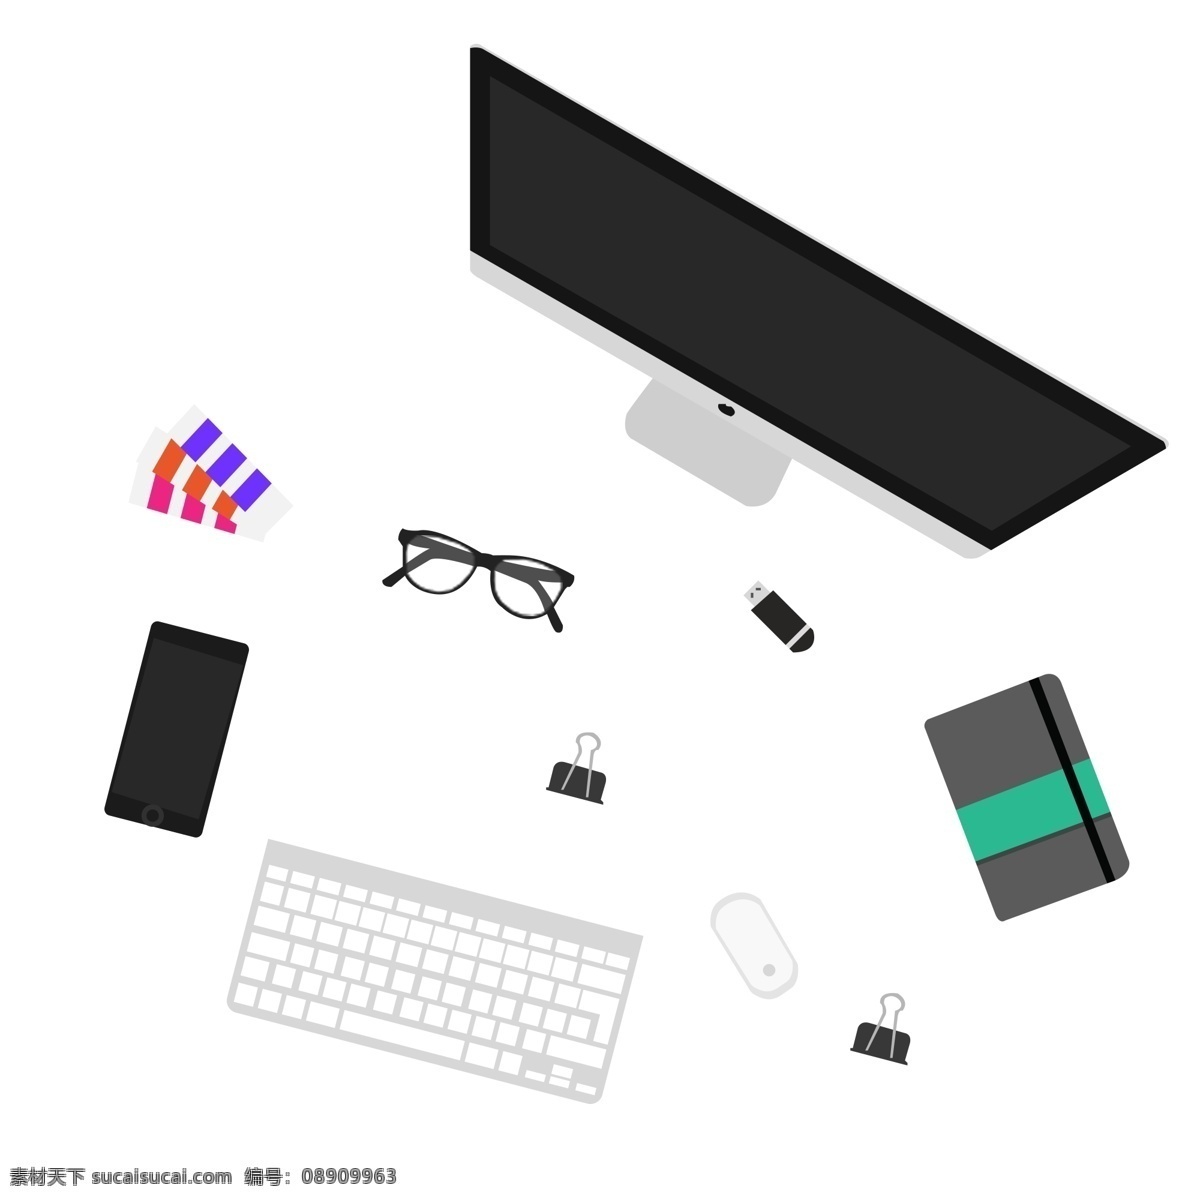 设计师 桌面 俯视 插画 矢量 苹果电脑 扁平化 卡通的 键盘 鼠标 手机 记事本 色卡 夹子